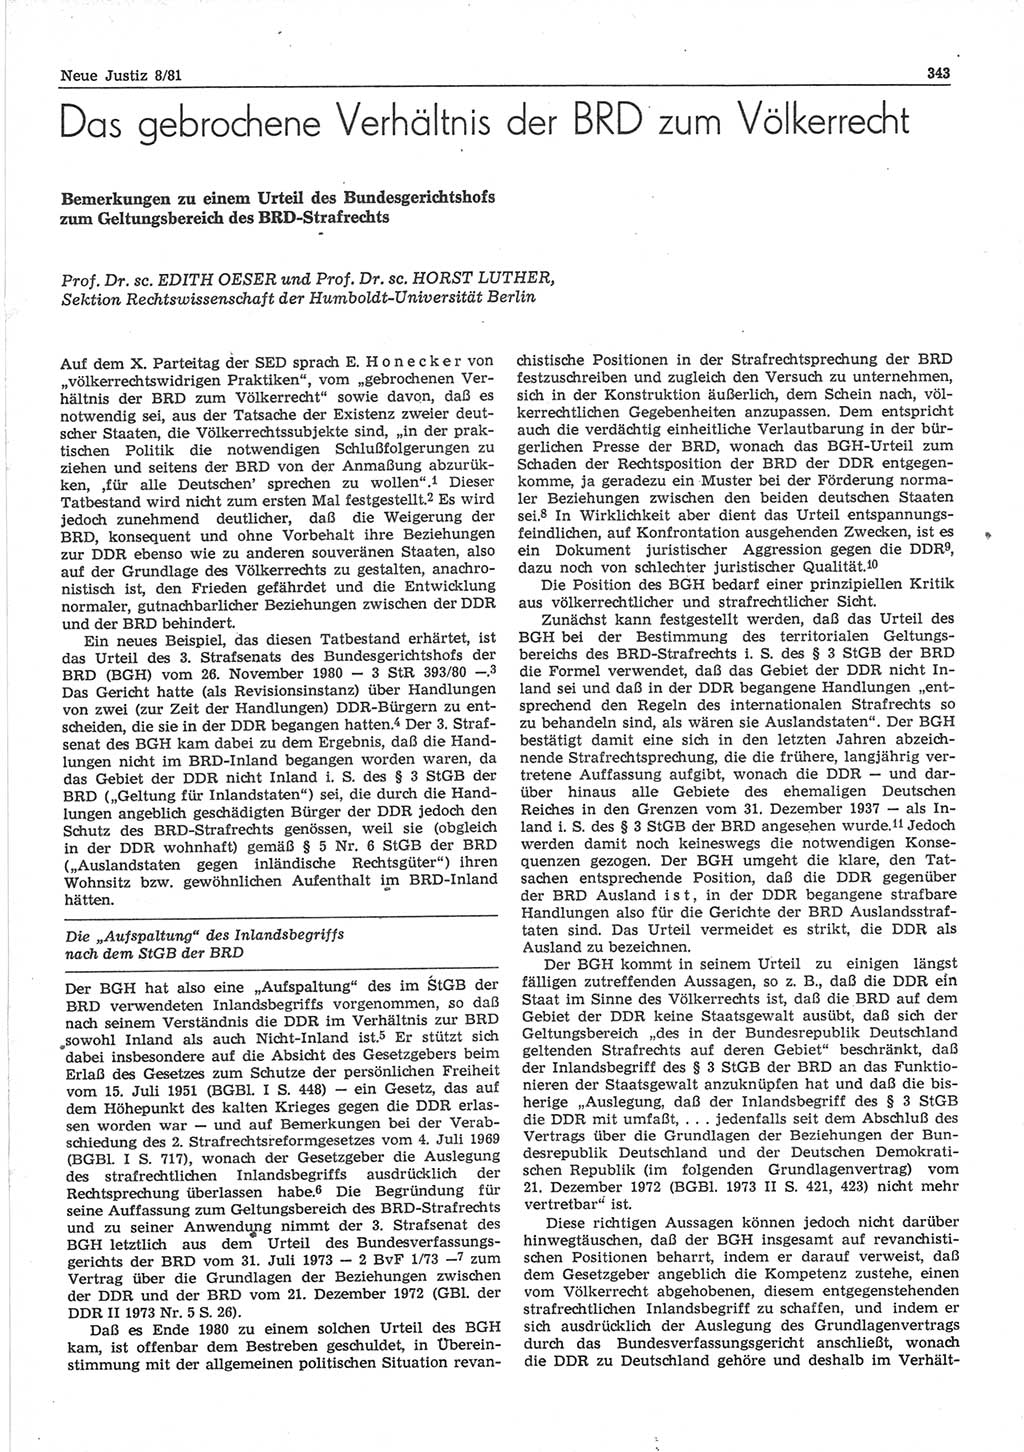 Neue Justiz (NJ), Zeitschrift für sozialistisches Recht und Gesetzlichkeit [Deutsche Demokratische Republik (DDR)], 35. Jahrgang 1981, Seite 343 (NJ DDR 1981, S. 343)